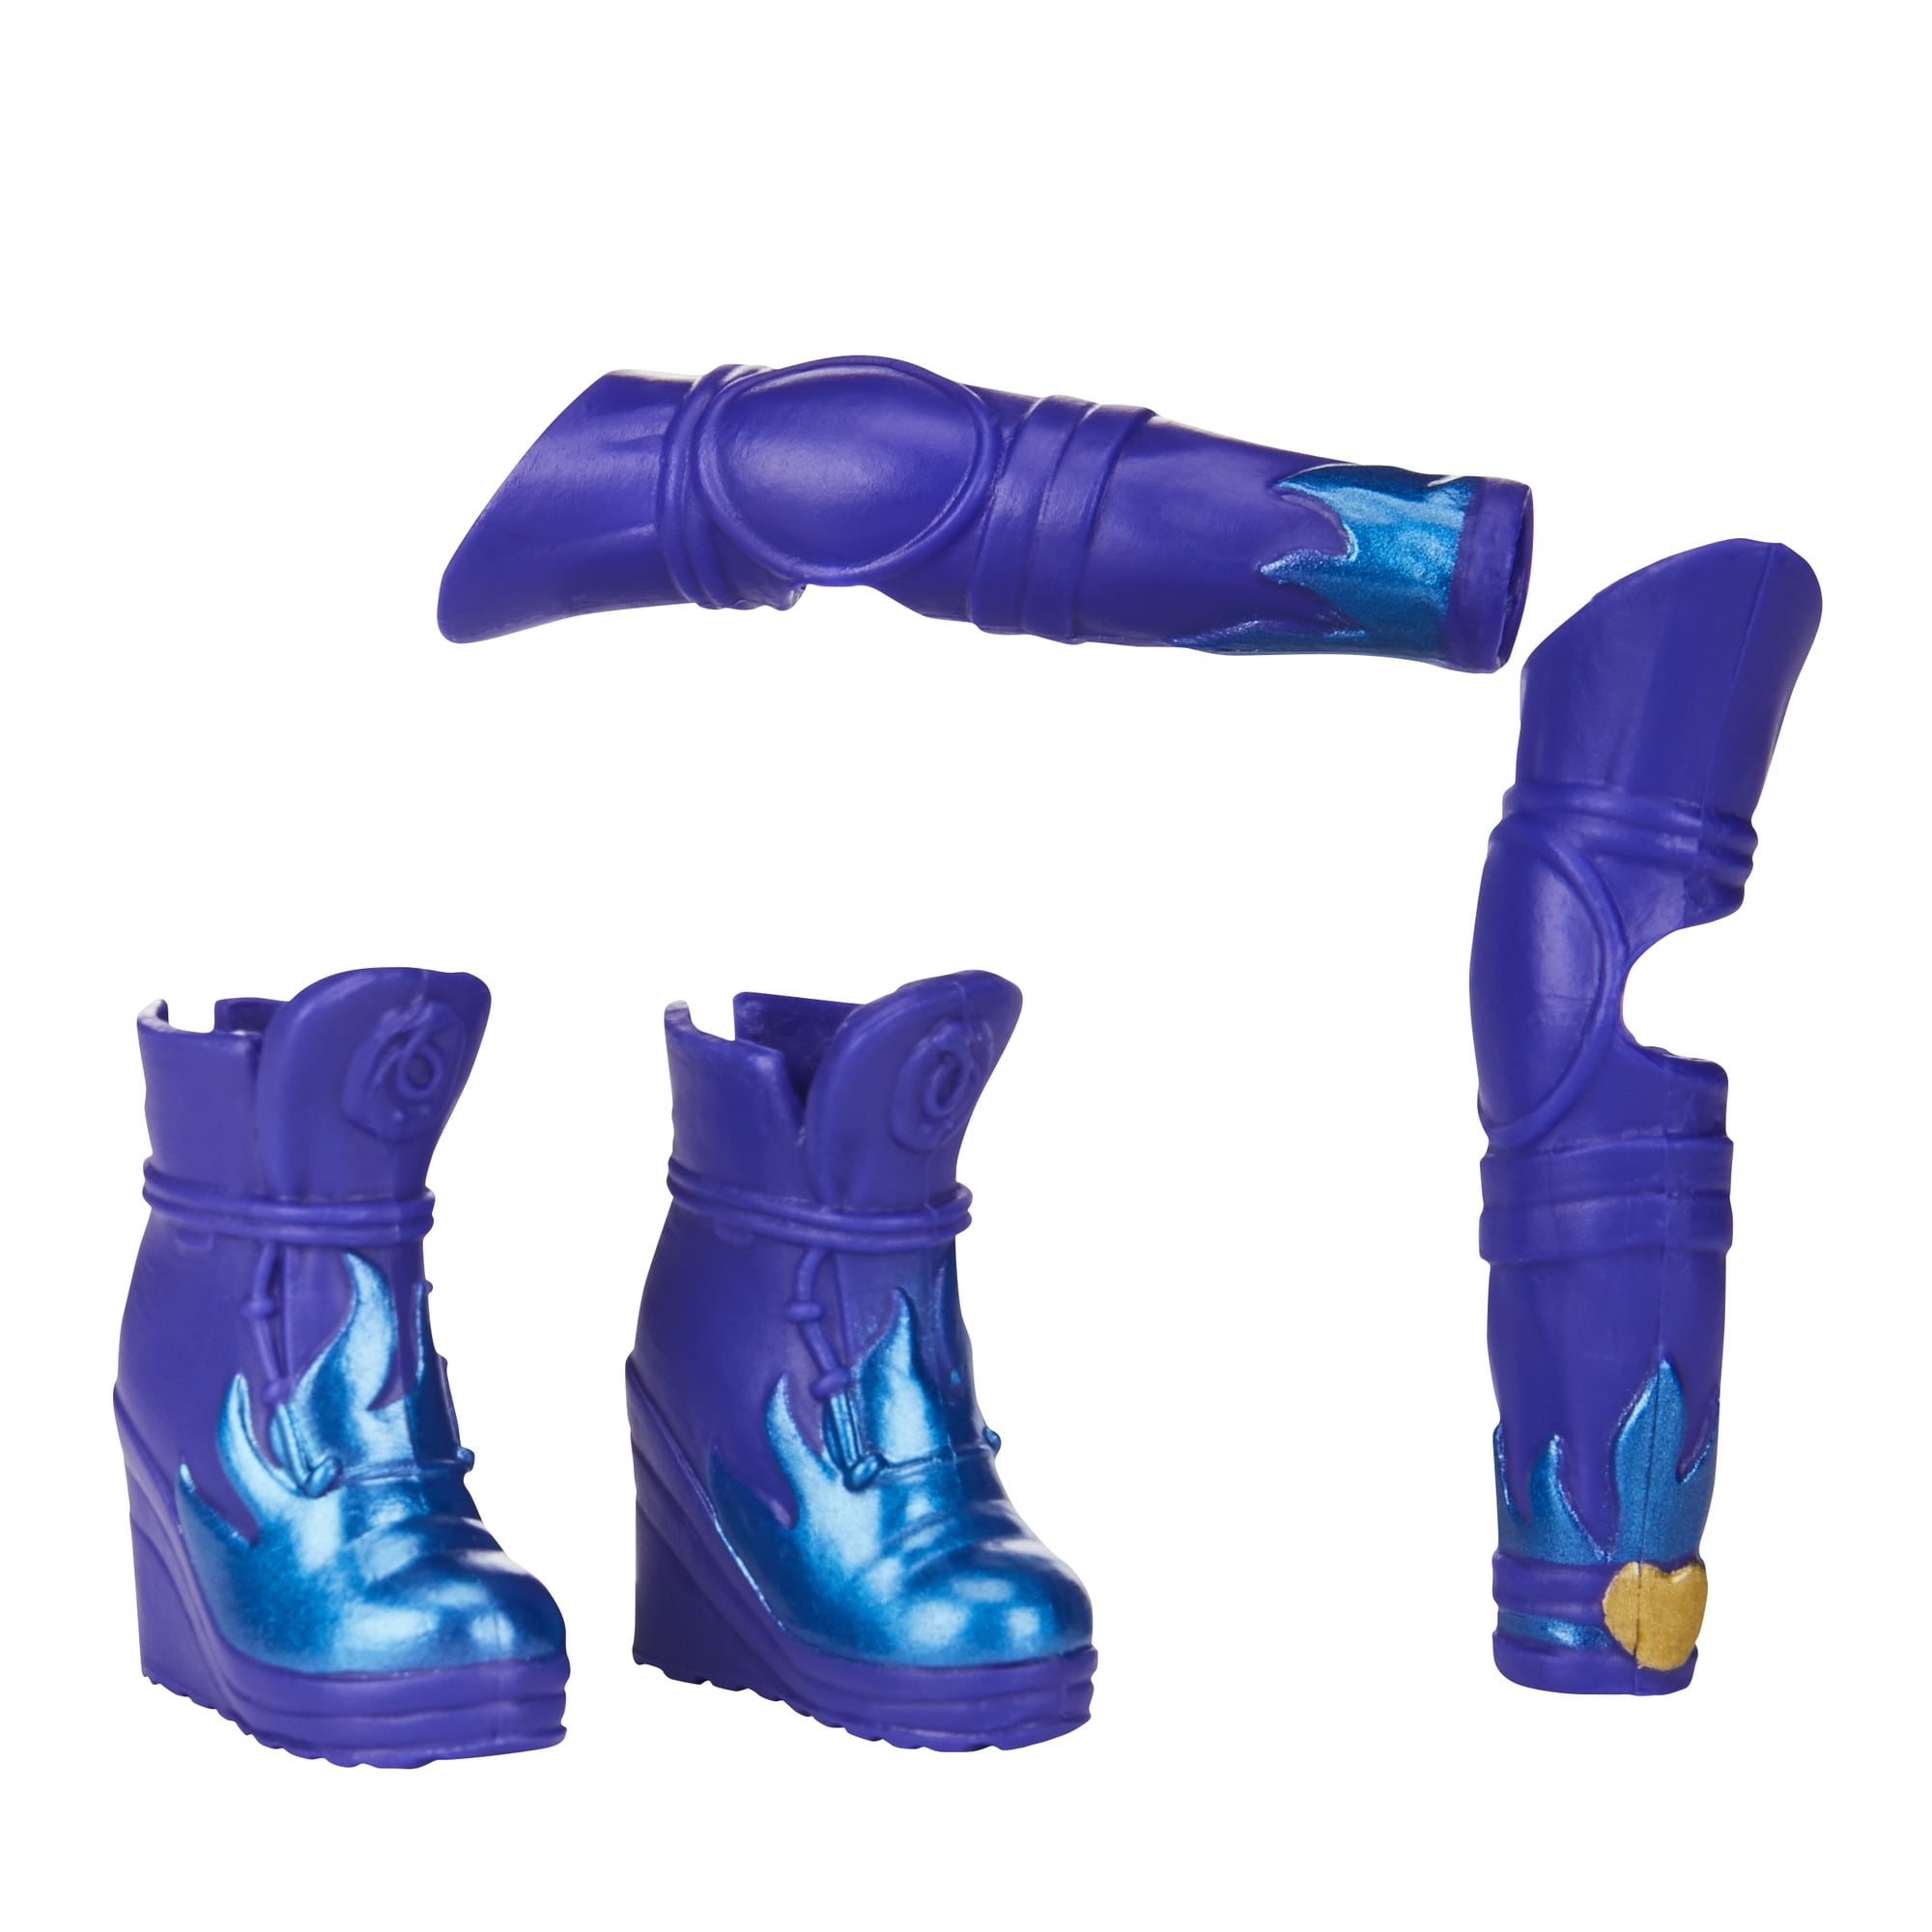 descendants 3 boots for girls